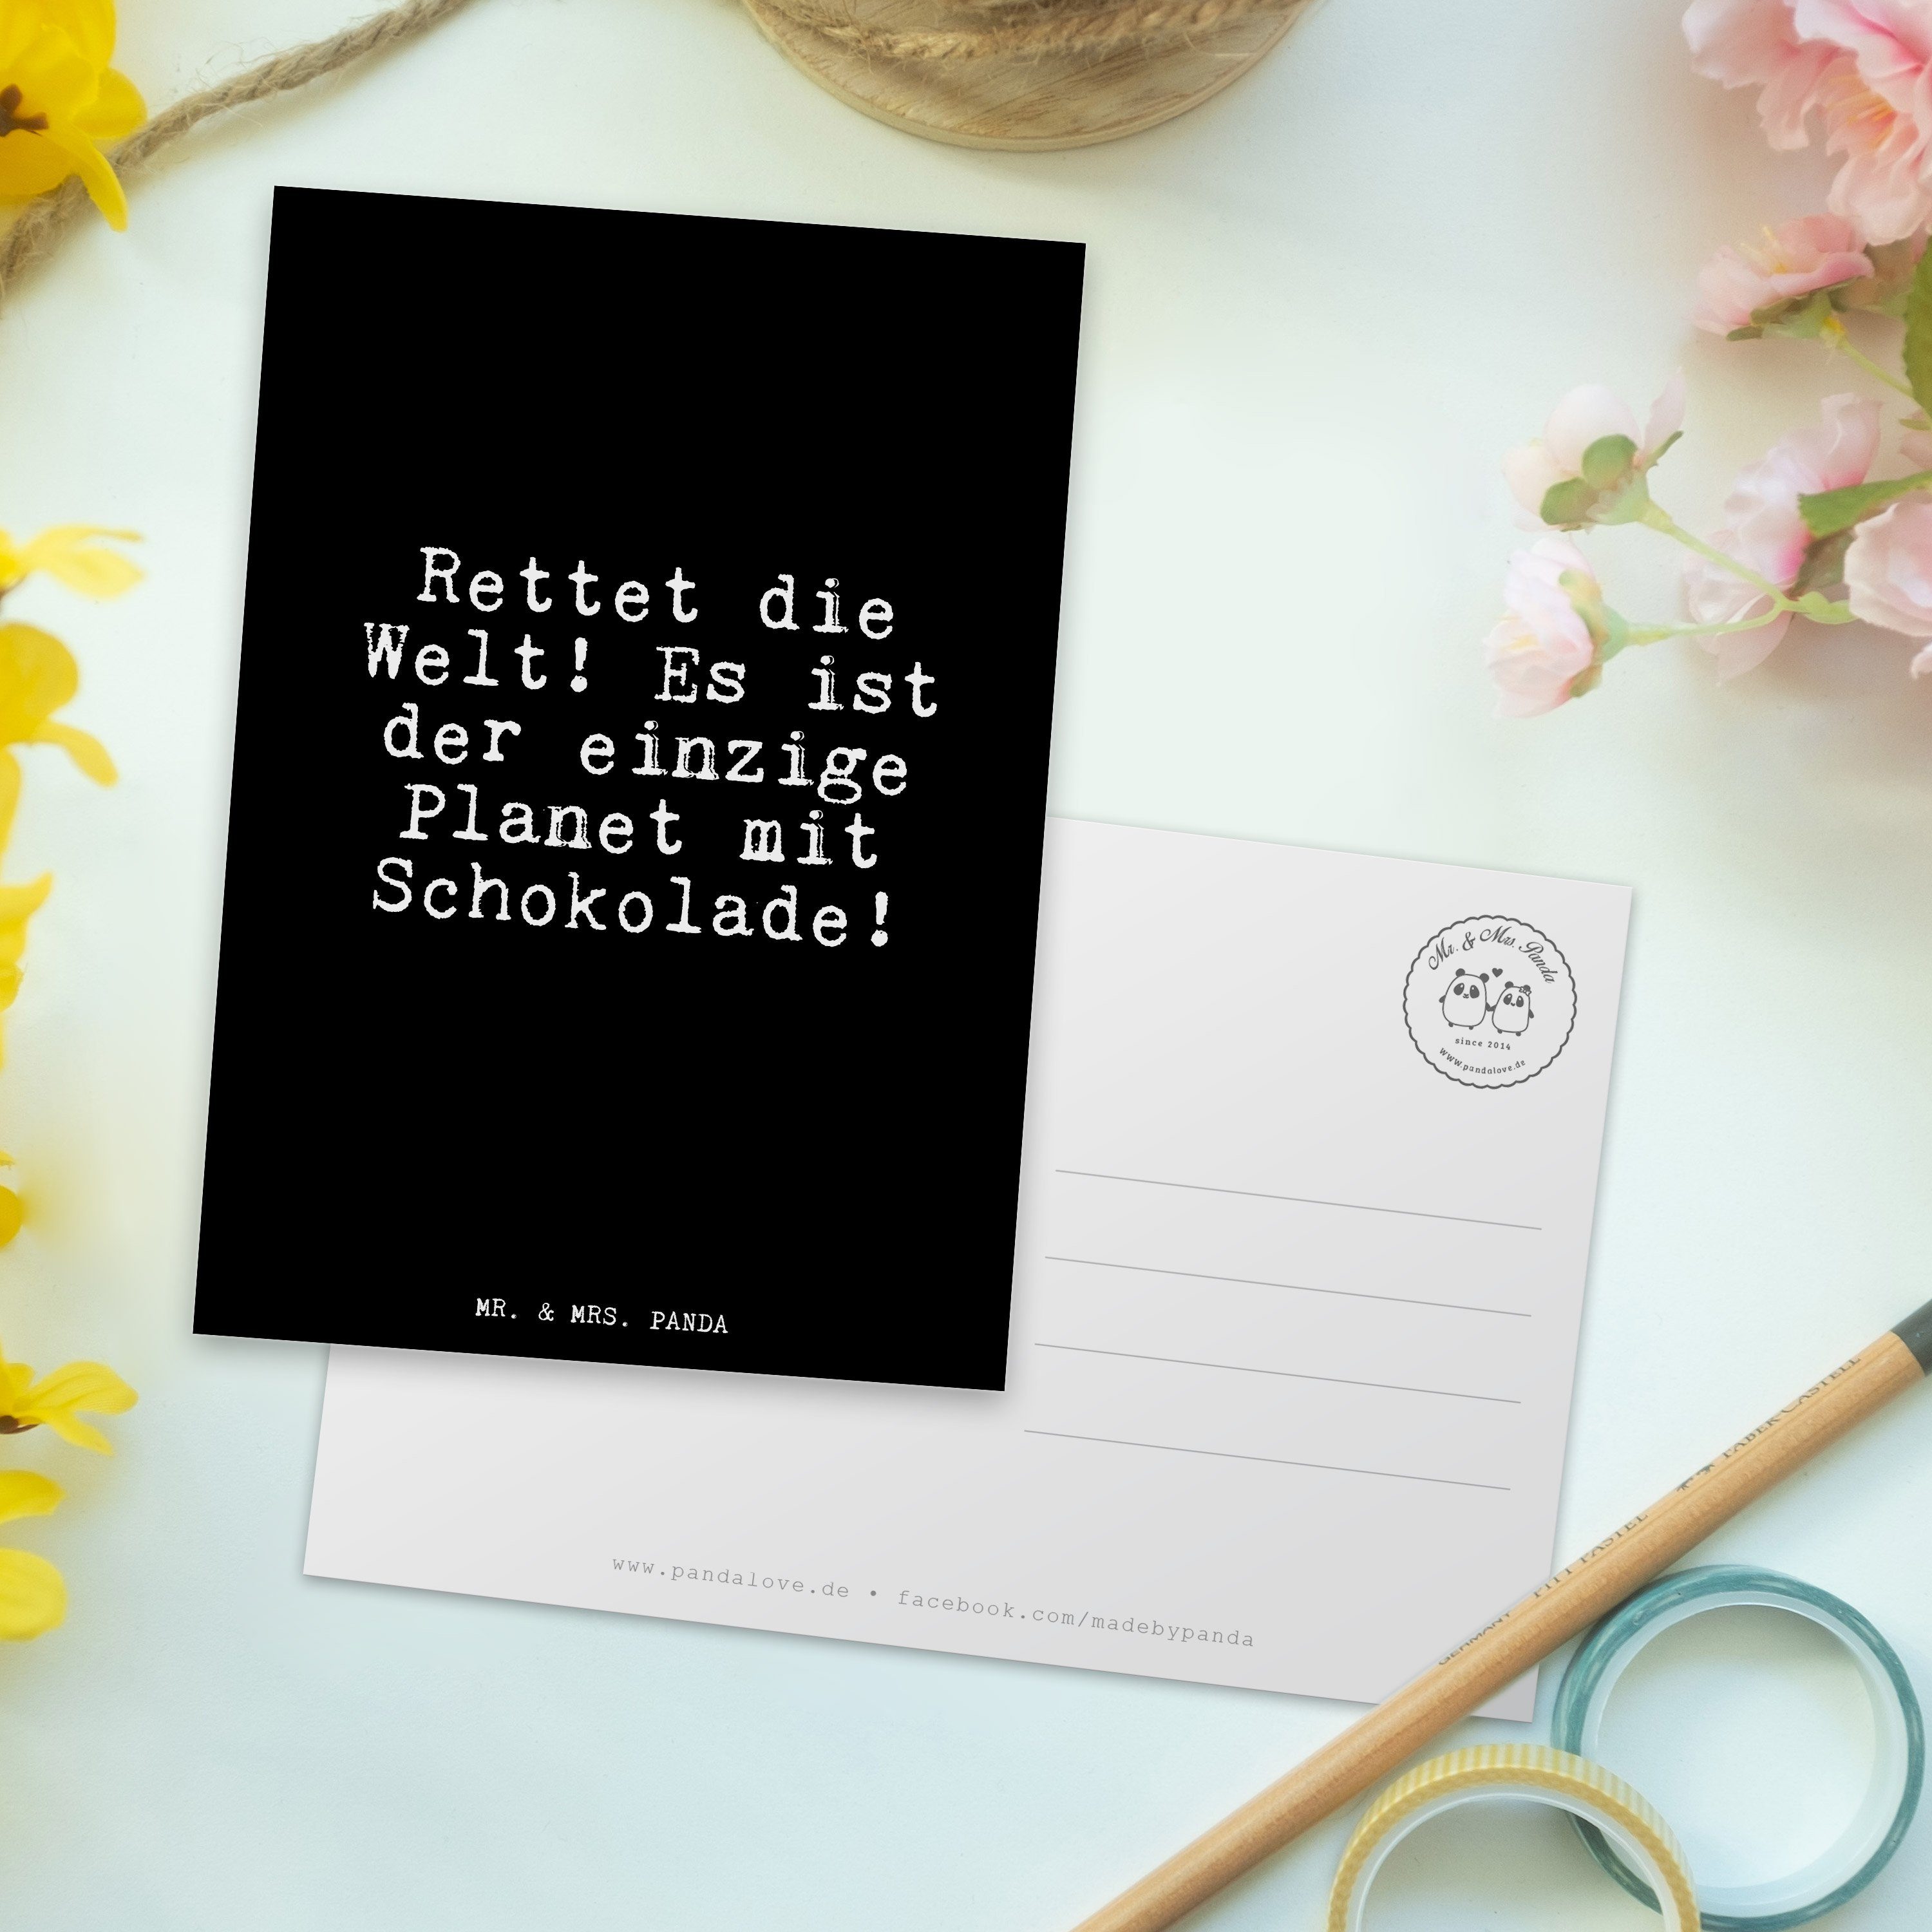 Mr. & Geschenk, Glizer Postkarte - Schwarz Freundin, Panda Spruch Es... Mrs. die - Welt! Rettet